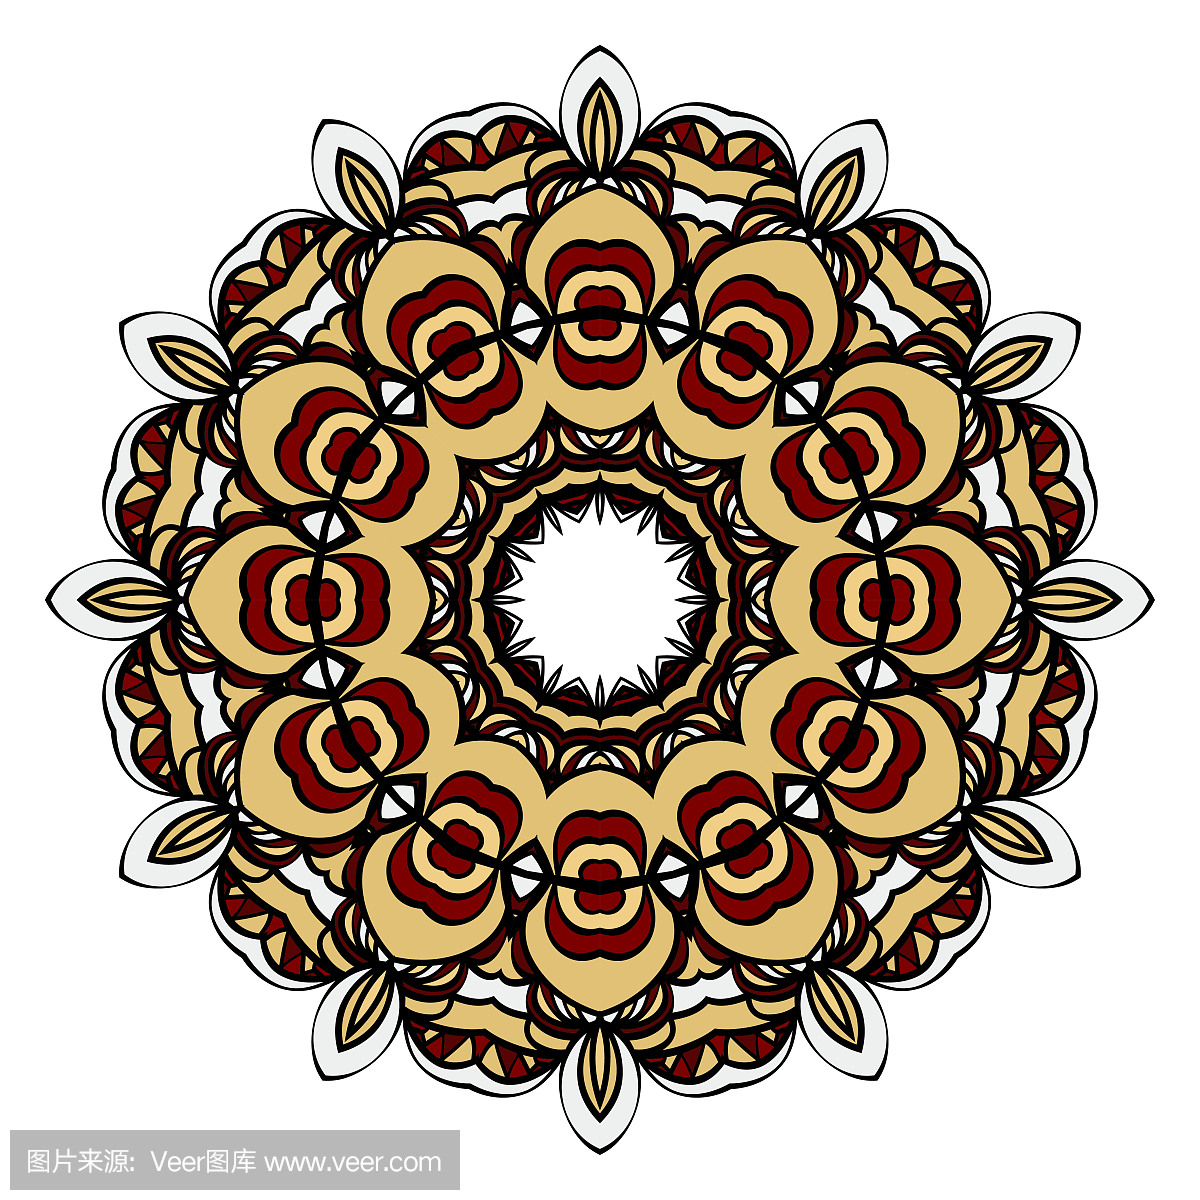 红色、金色曼荼罗圆形装饰设计,用于贺卡、请柬。矢量图